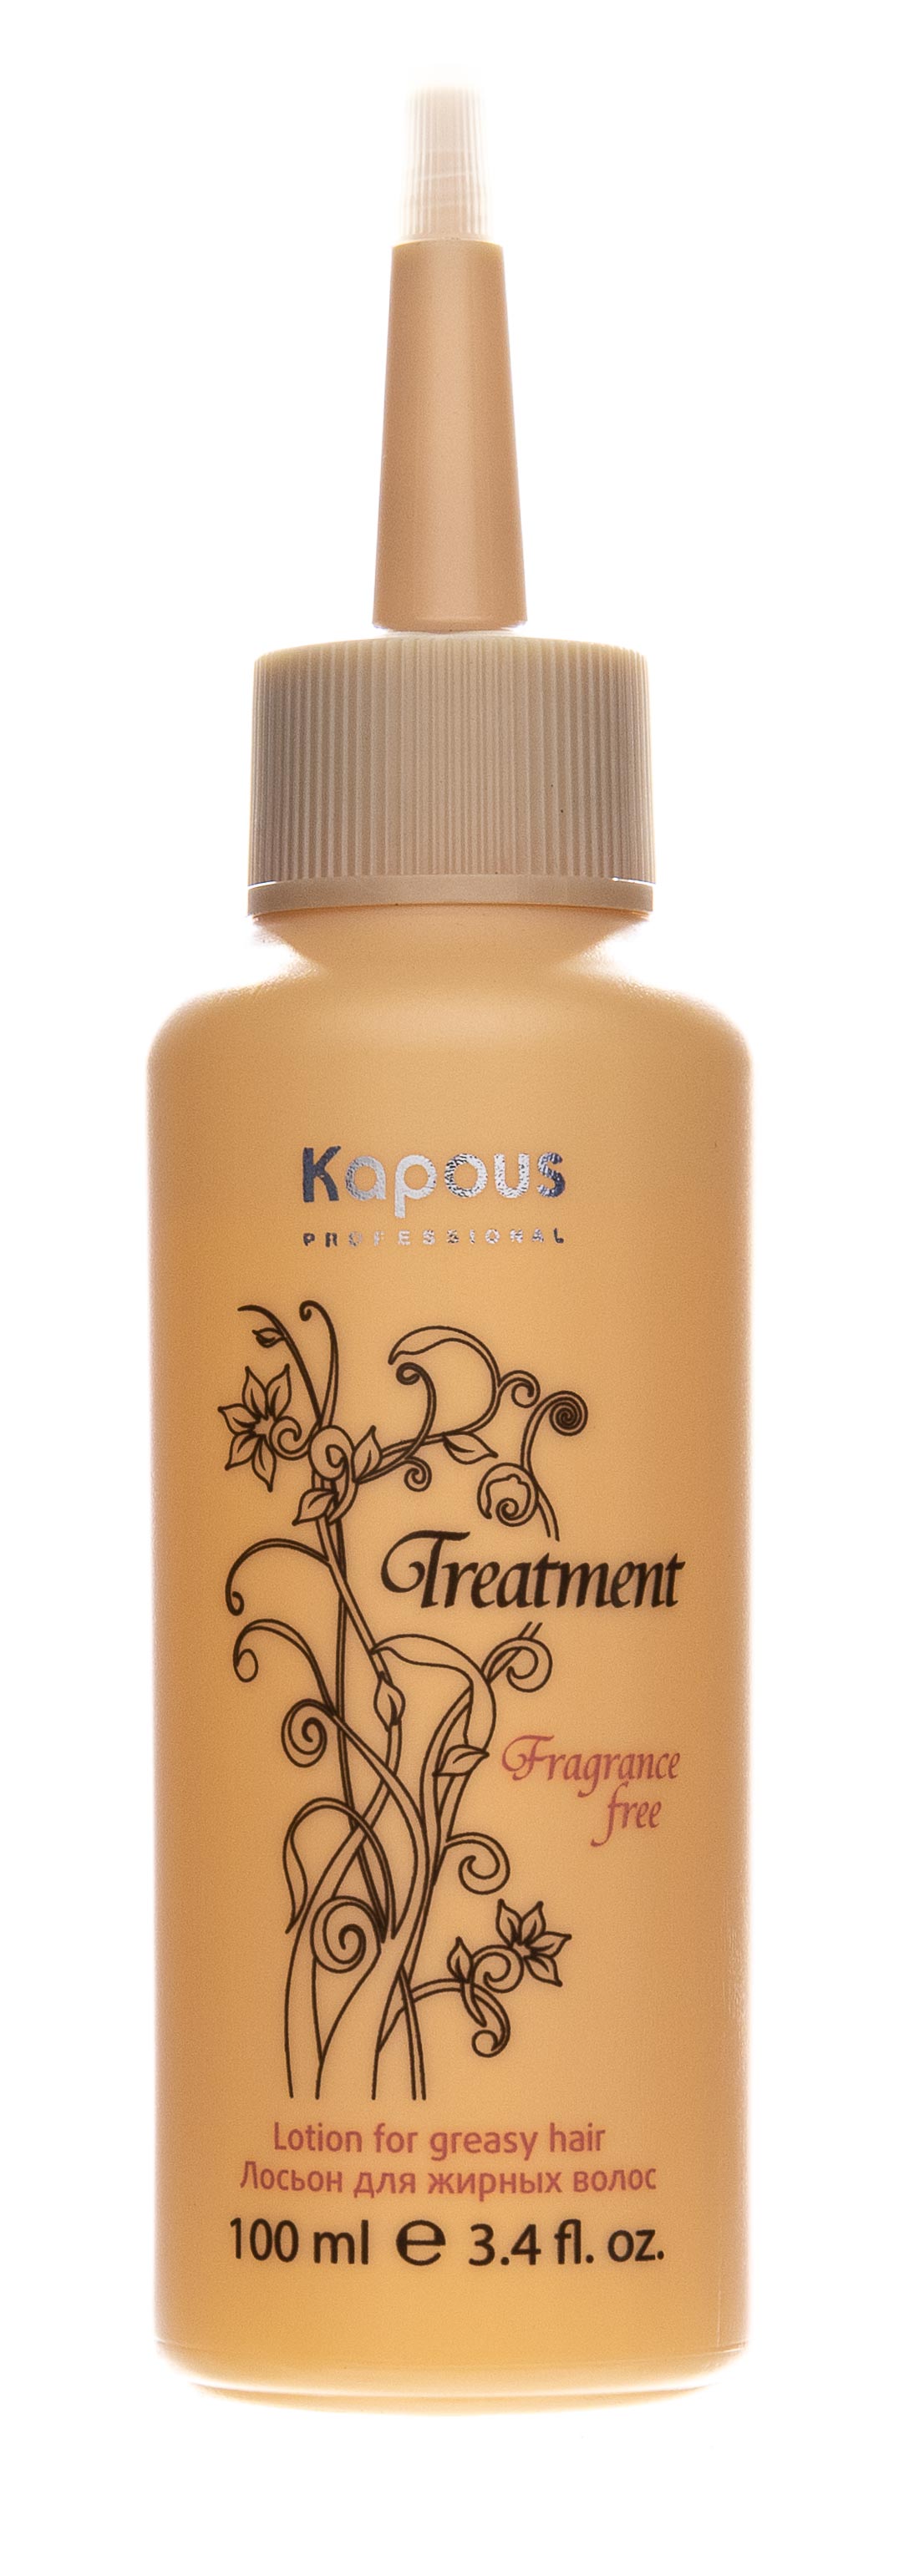 Kapous Professional Лосьон для жирных волос, 100 мл (Kapous Professional, Treatment)